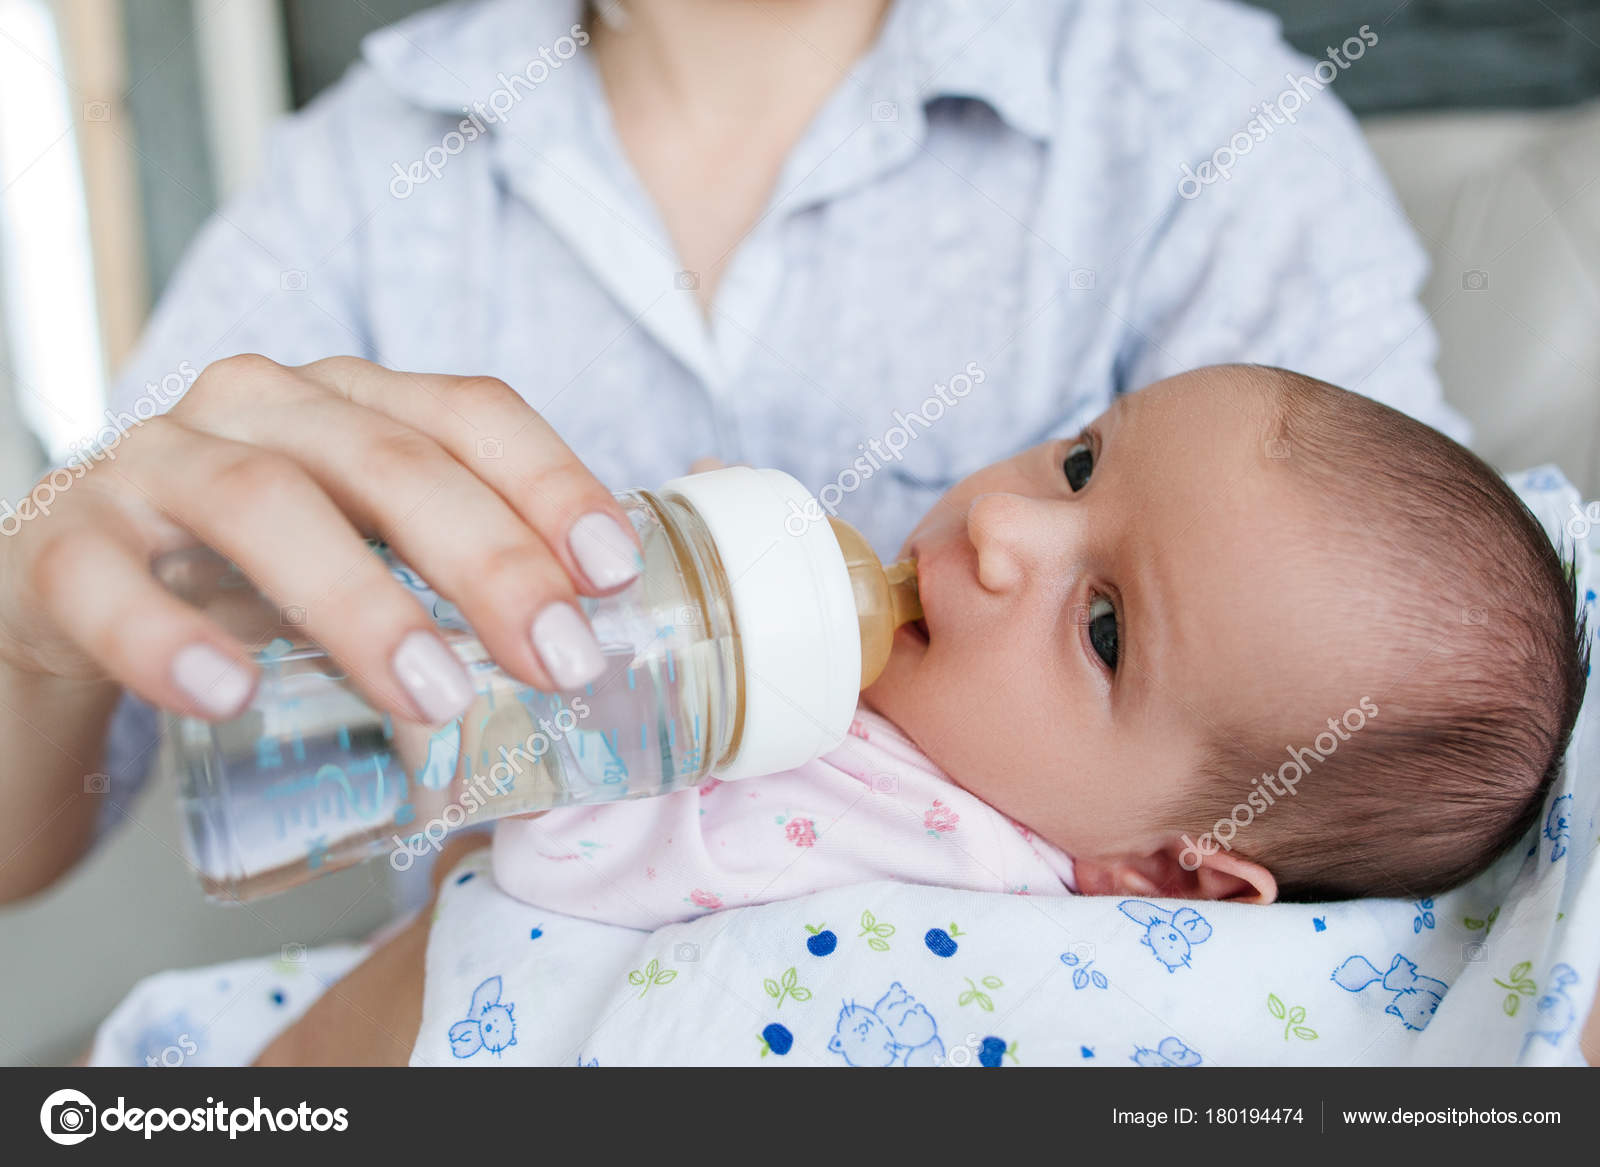 Вода новорожденному при смешанном вскармливании. Кормление из бутылочки водой грудничка. Поить водой новорожденного ребенка при грудном вскармливании. Допаивать грудничка водой. Грудничок в воде.